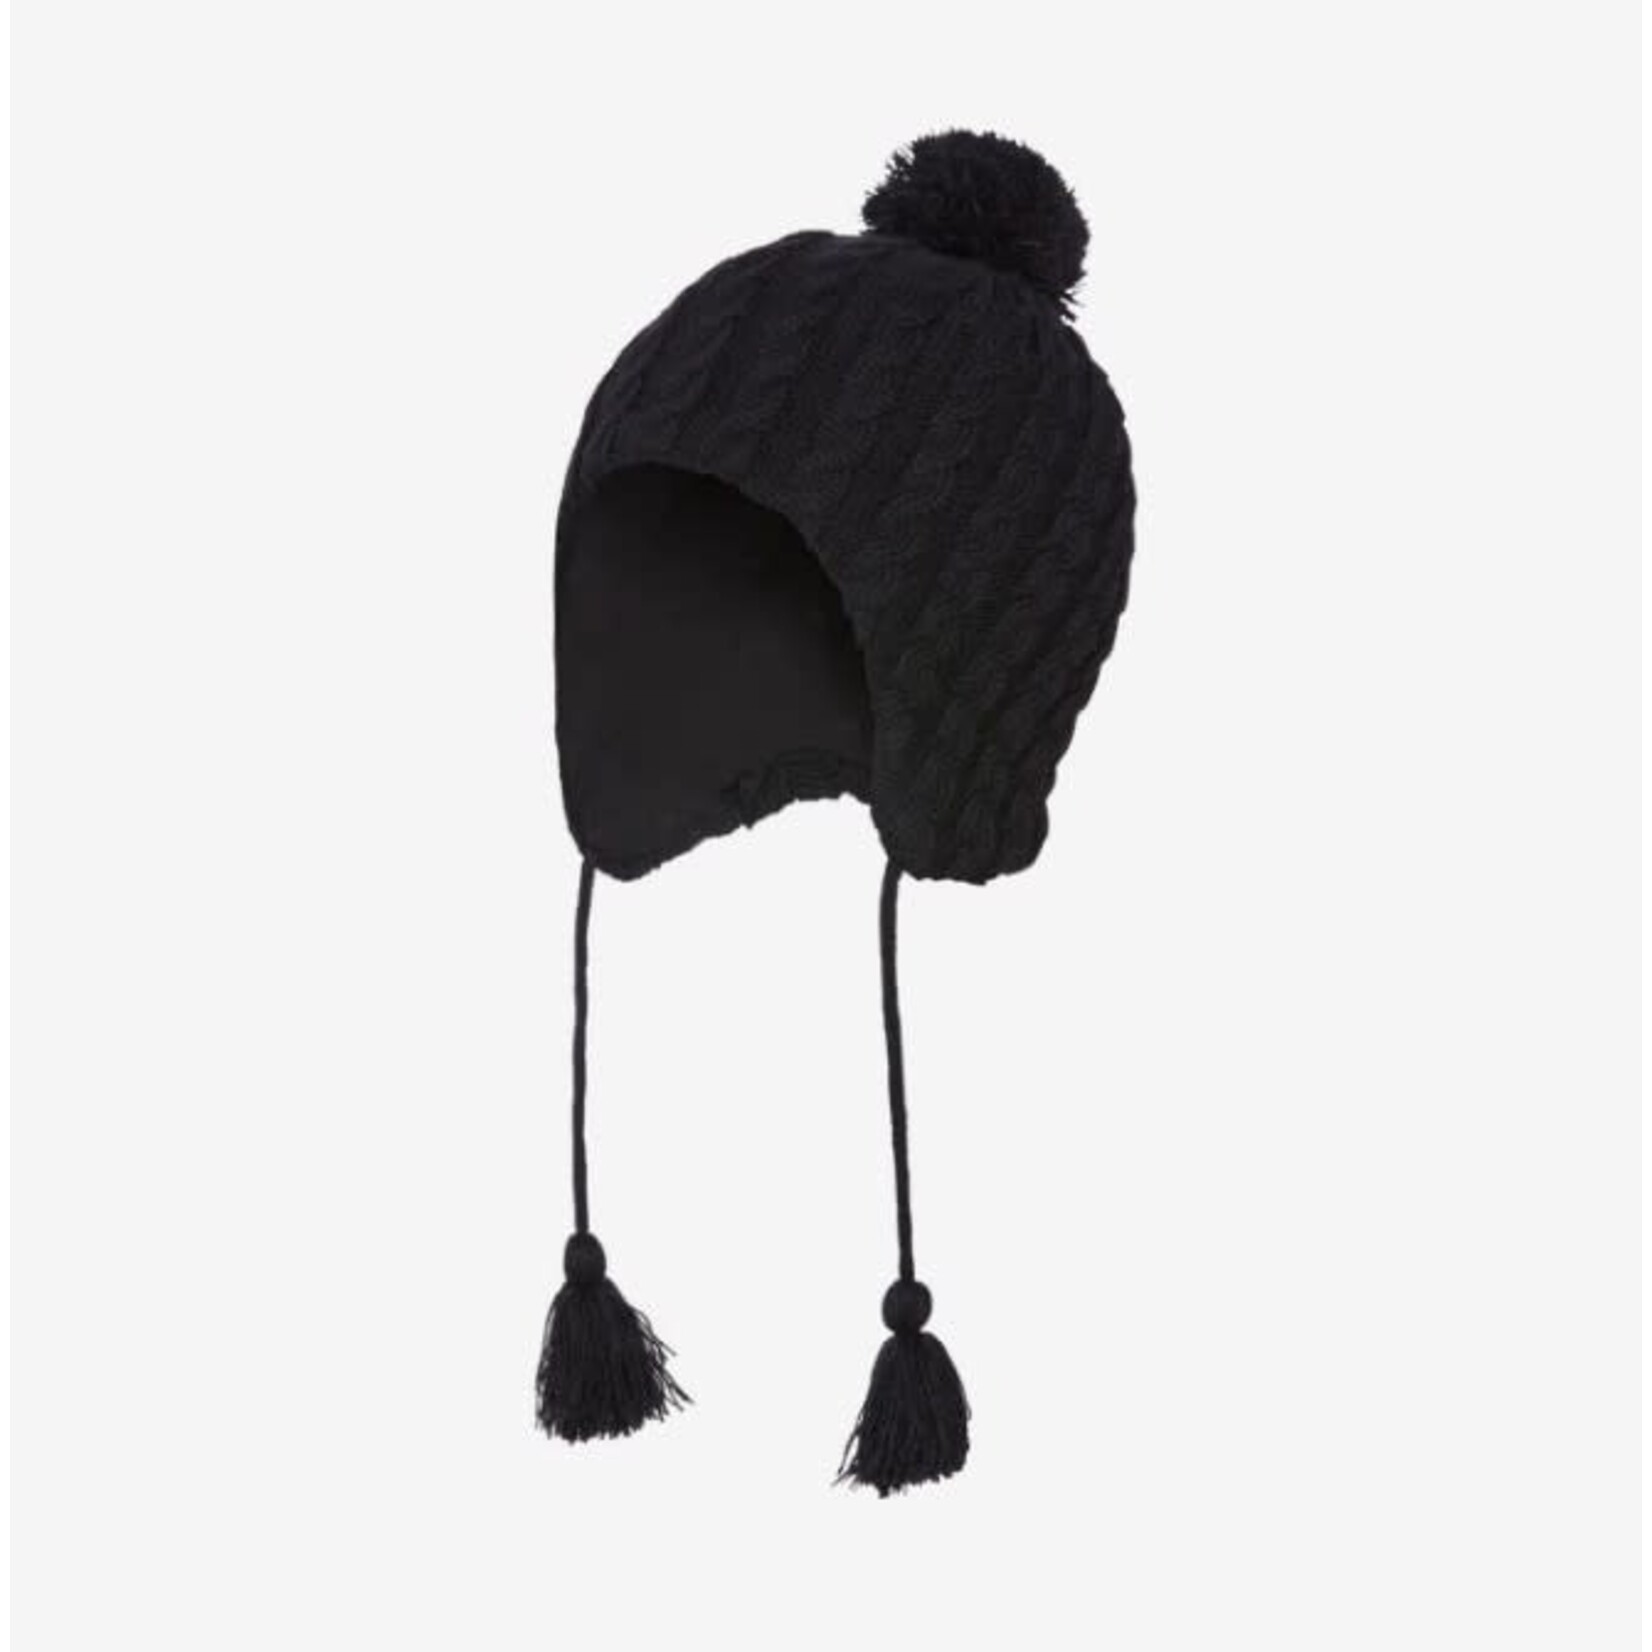 Kombi KOMBI - Peruvian winter hat 'Twiny' black - Size Children